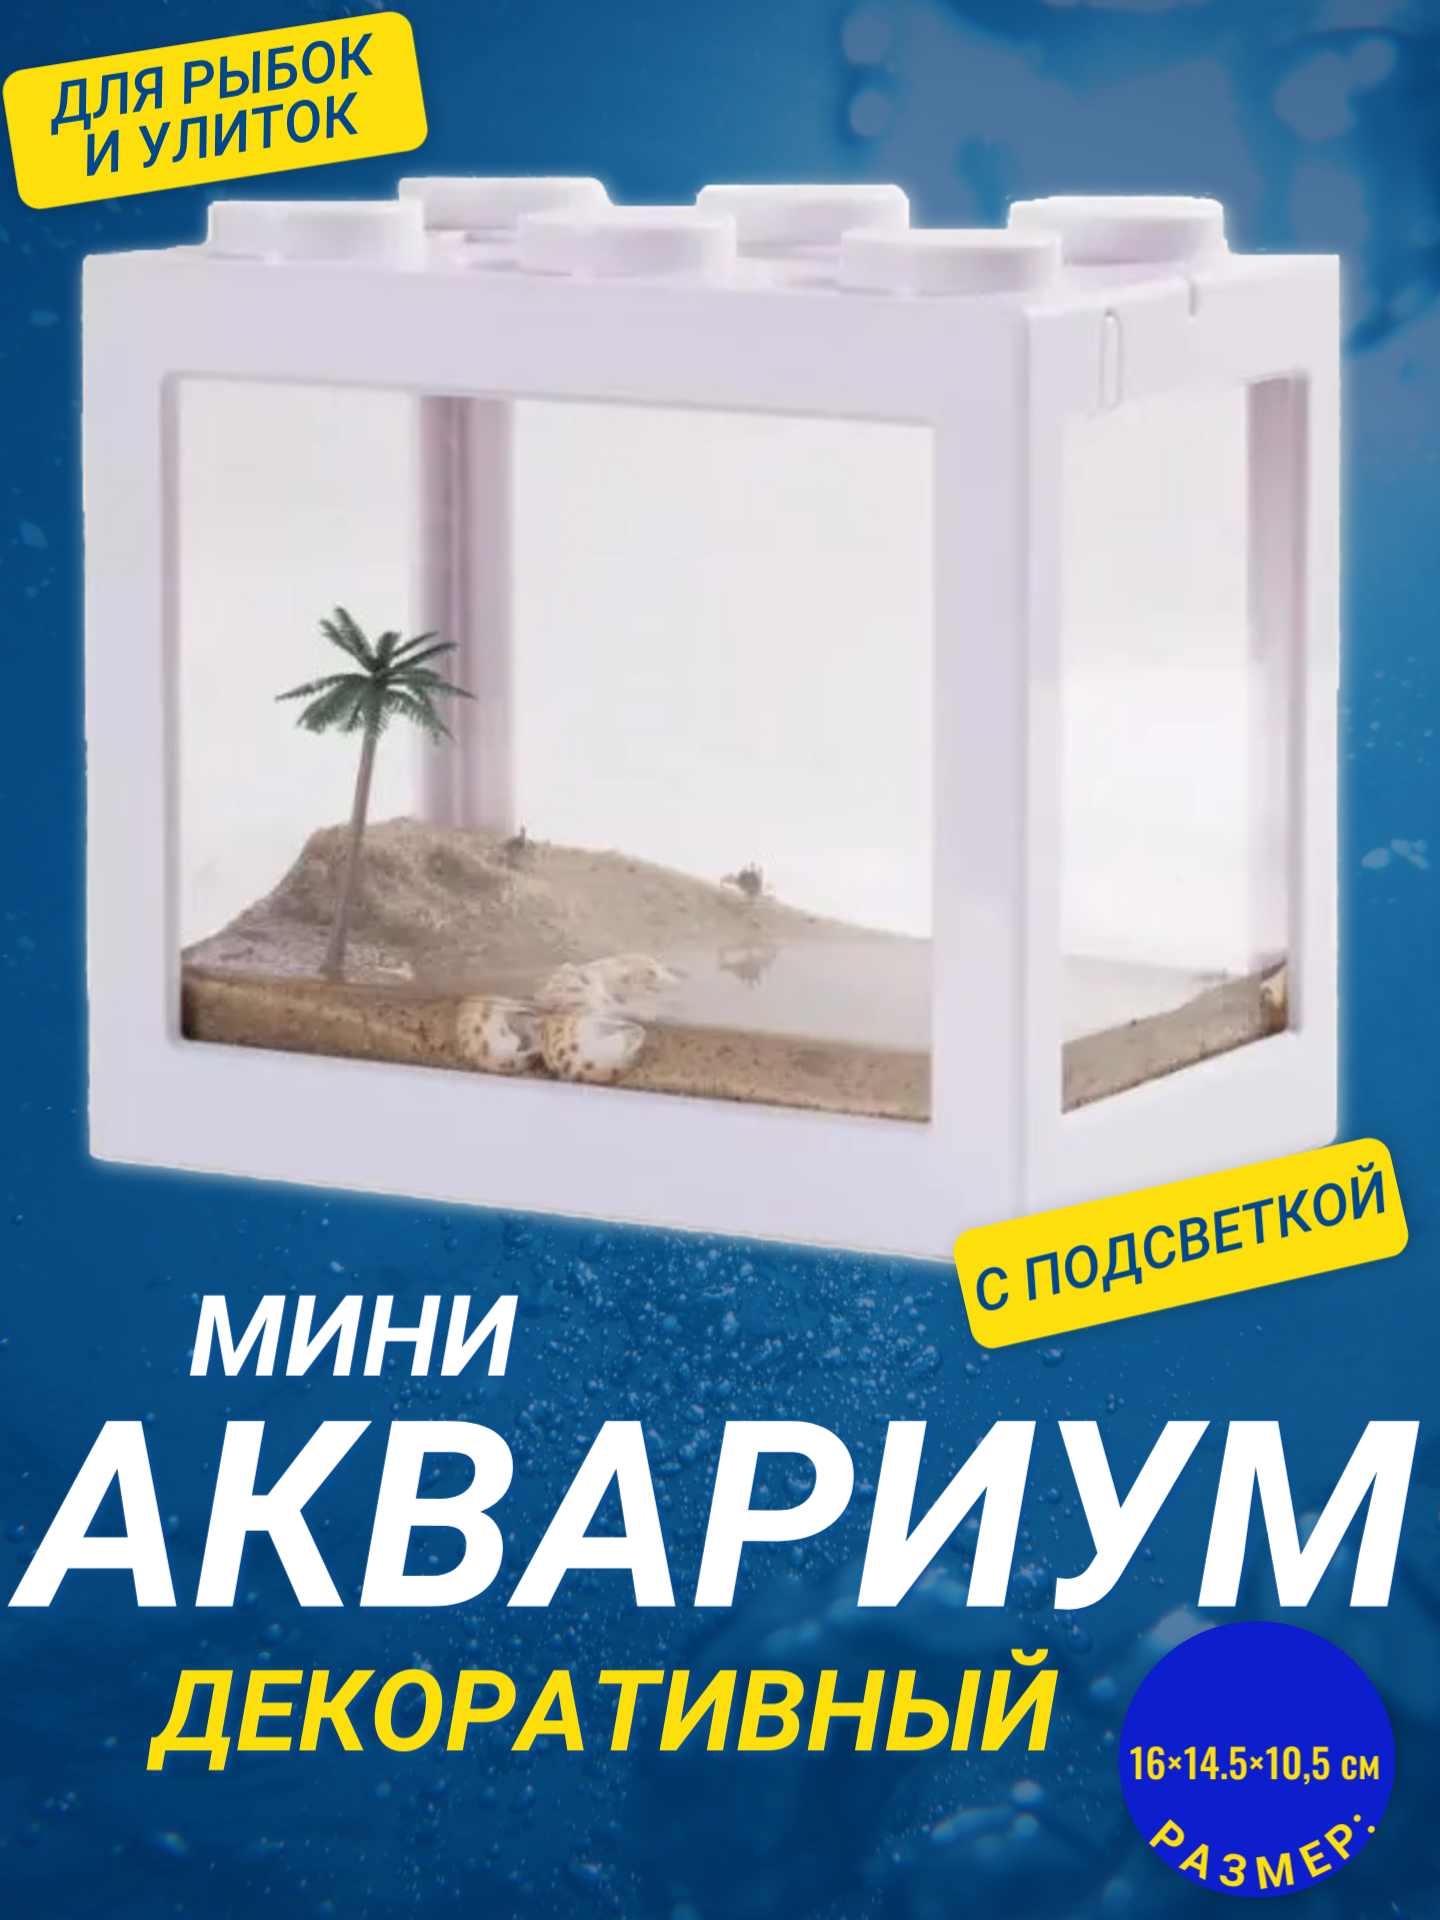 Декоративный мини аквариум с подсветкой, 16x14.5 см белый / Акриловый аквариум